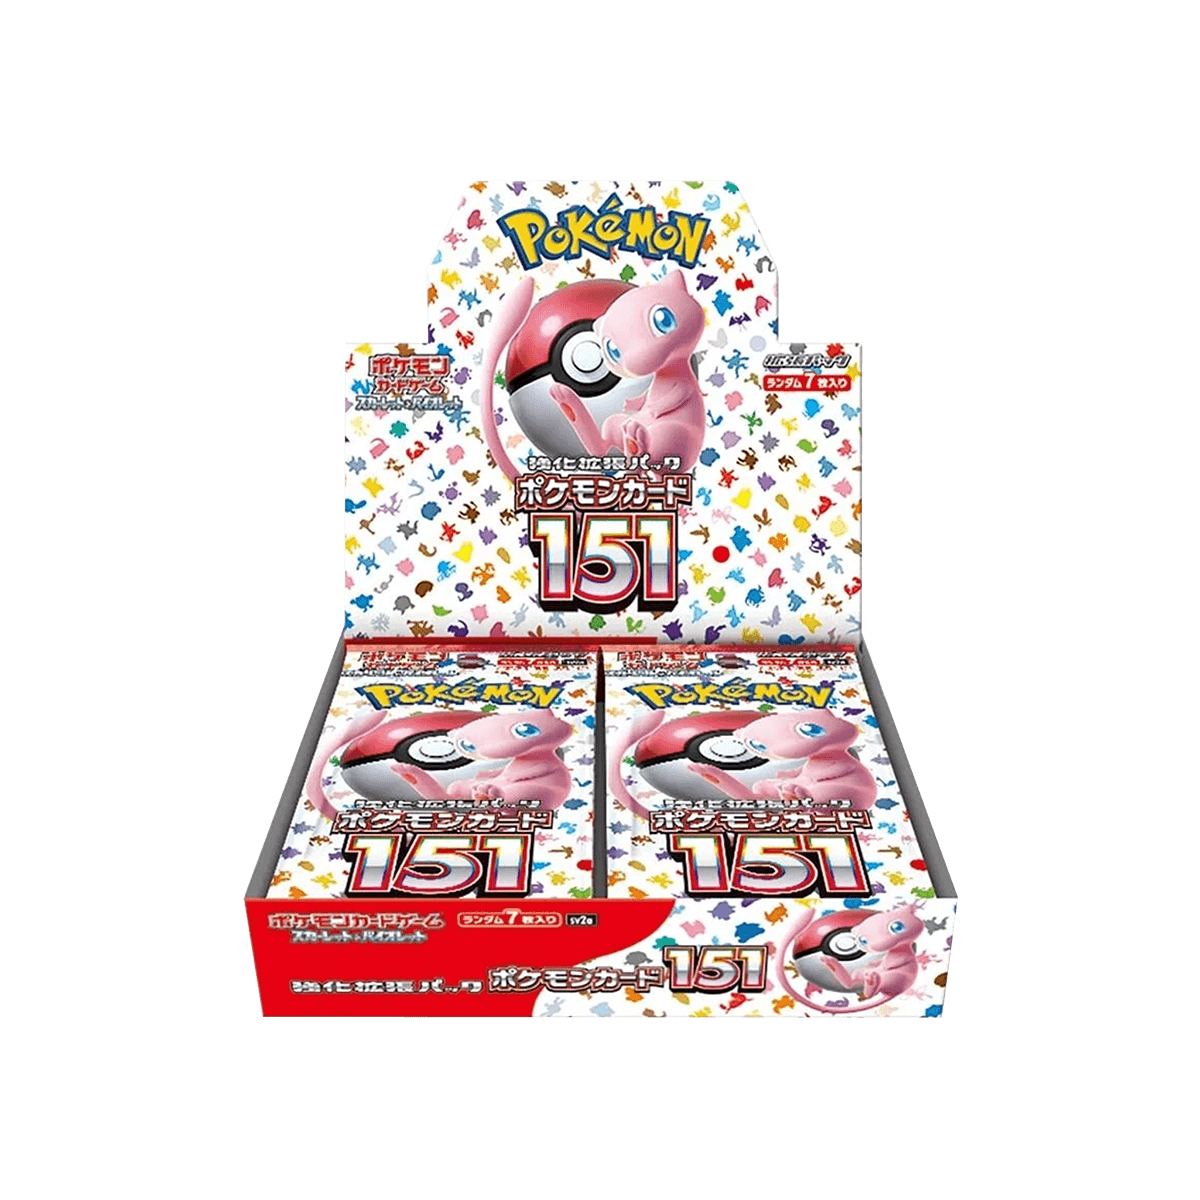 Pokémon TCG - Pokémon Card 151 Booster Box - Cardmaniac.ch